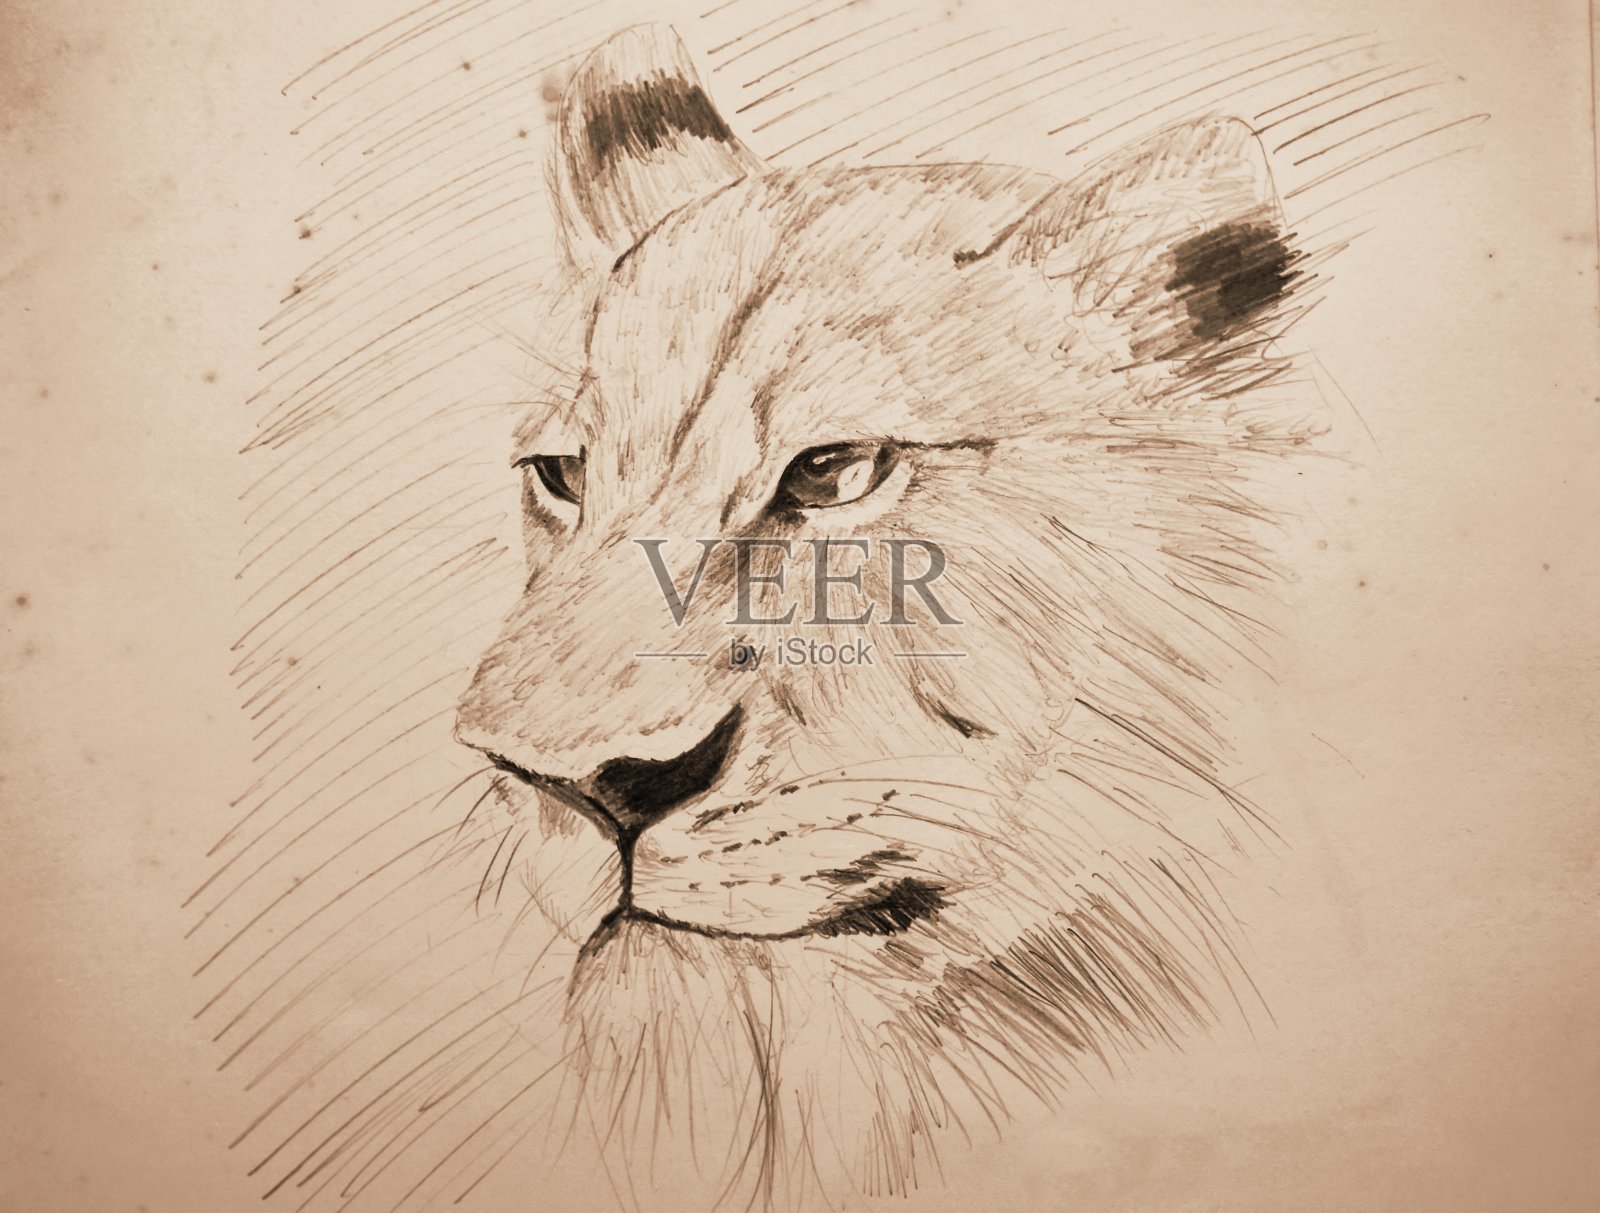 用狮子铅笔在旧纸上画着深褐色的素描插画图片素材